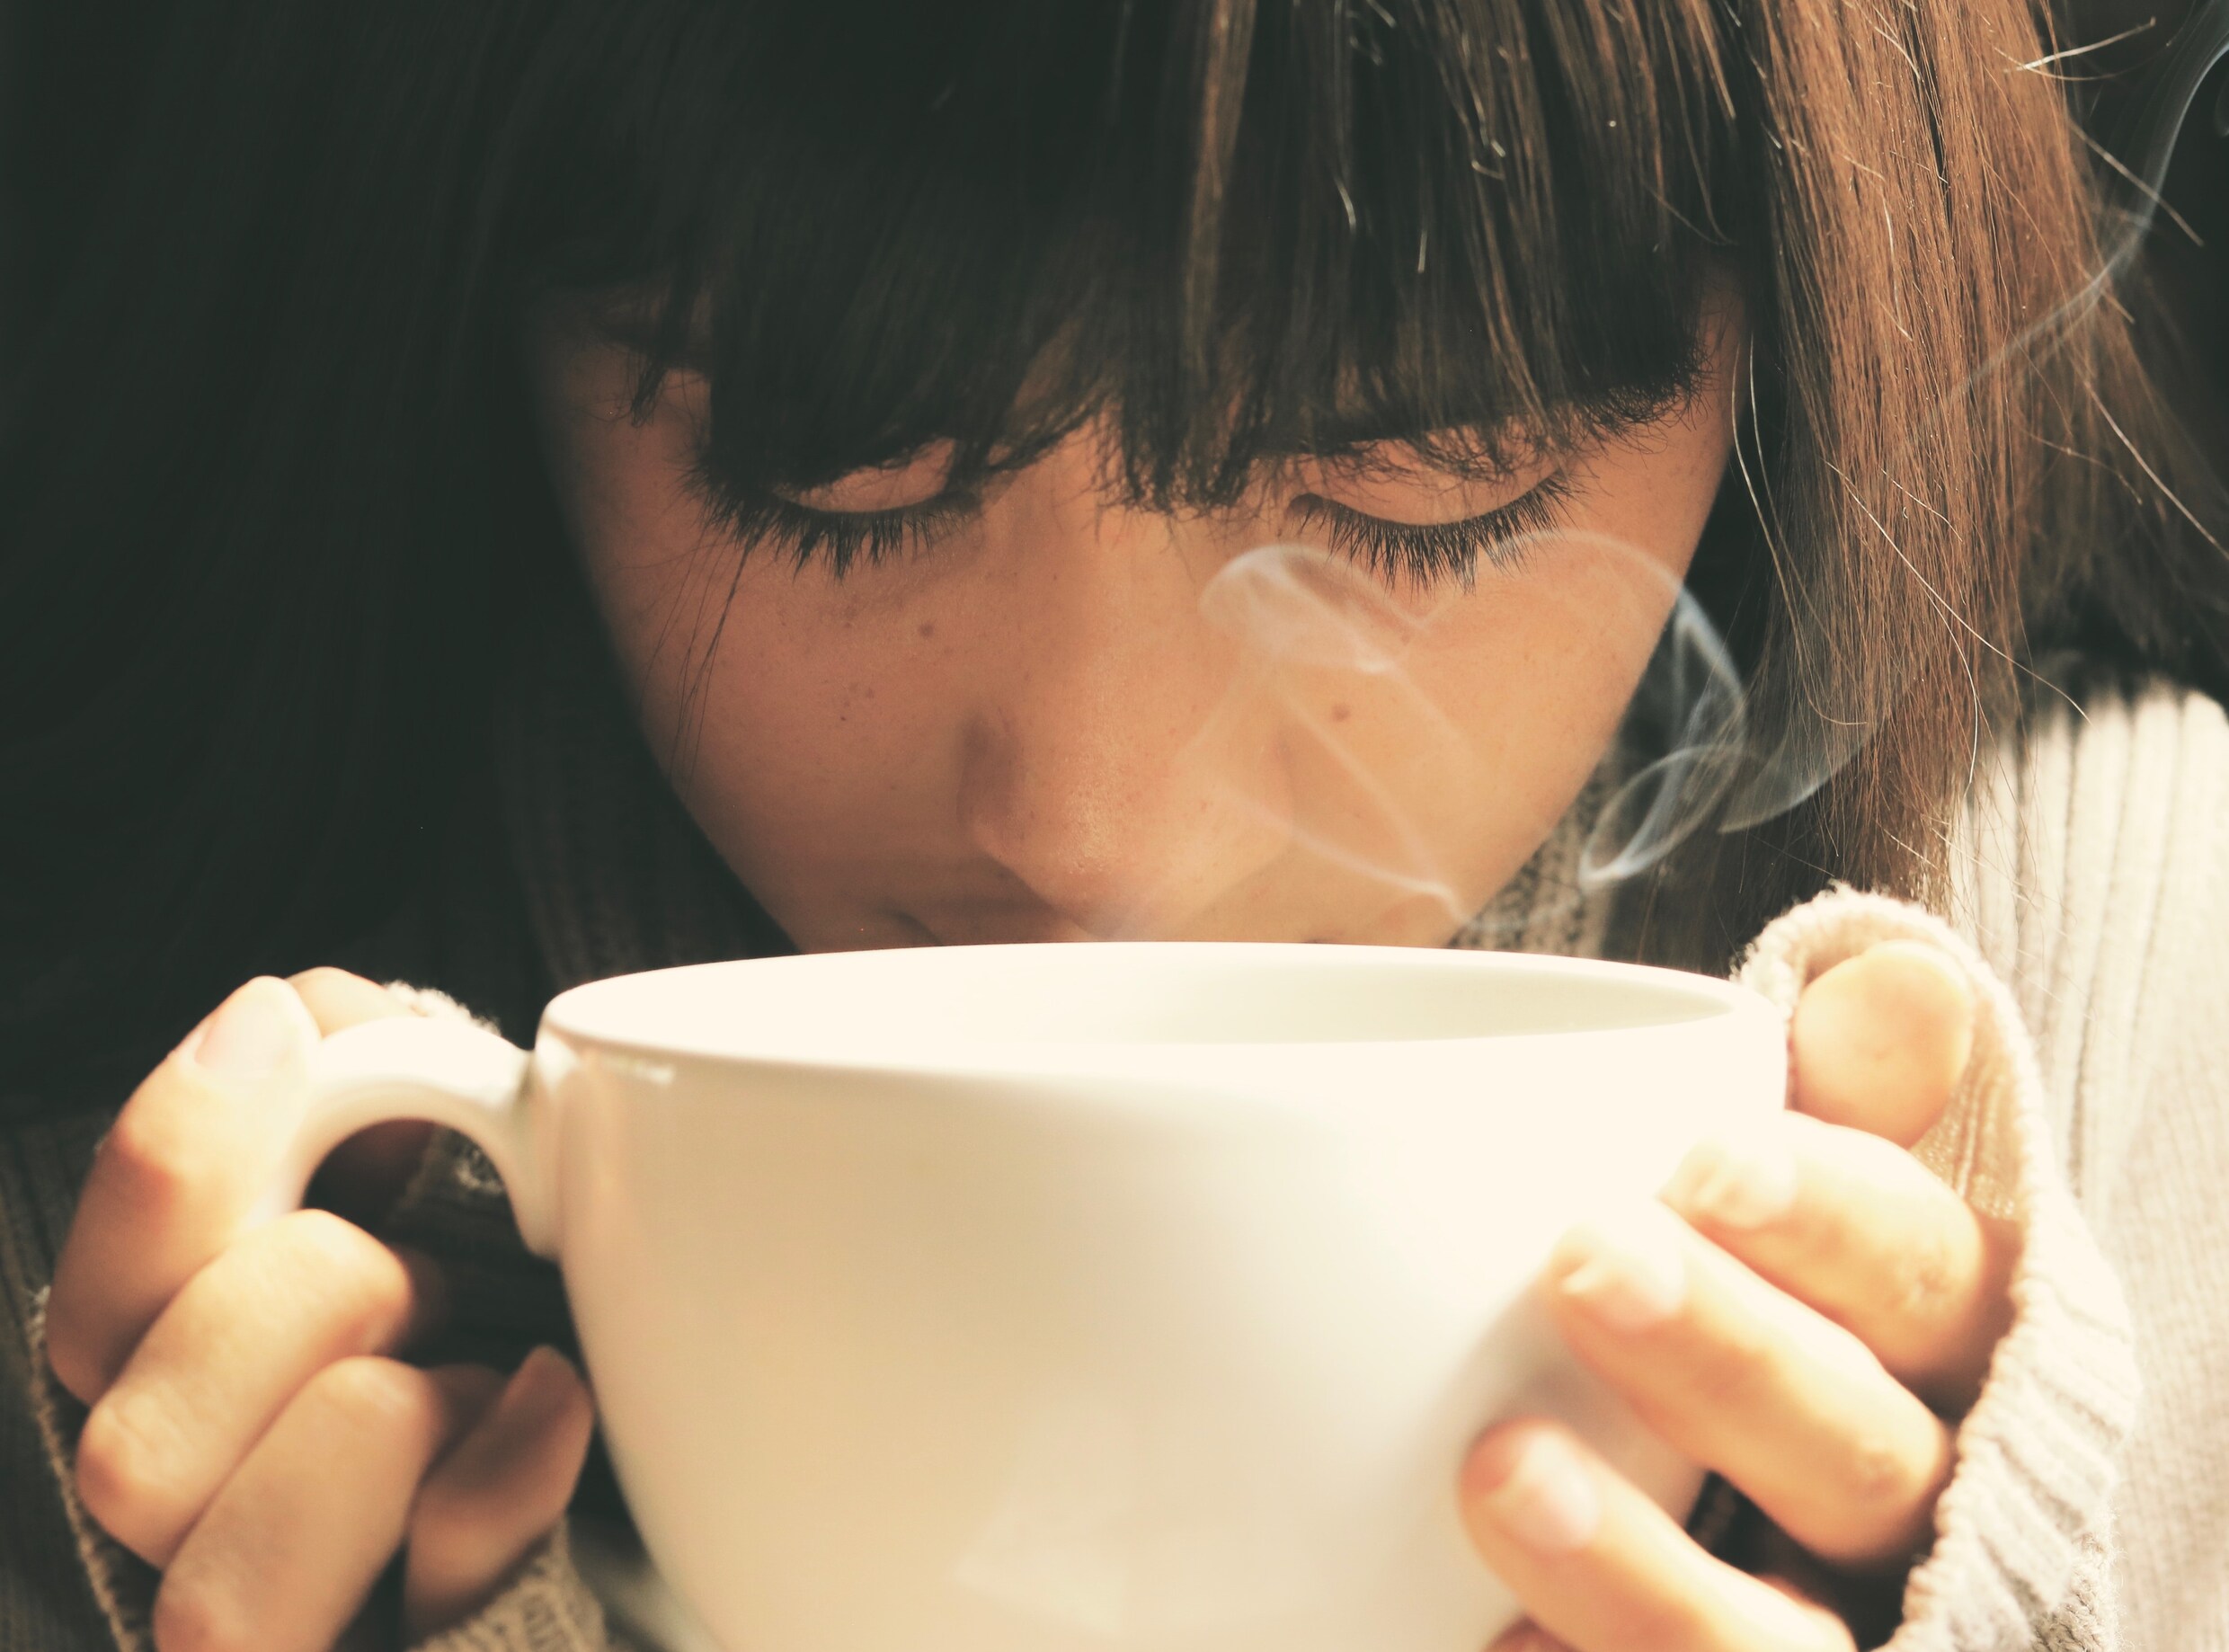 Een snellere vetverbranding, een energiepiek, een opgejaagd gevoel…wat doet koffie met je?